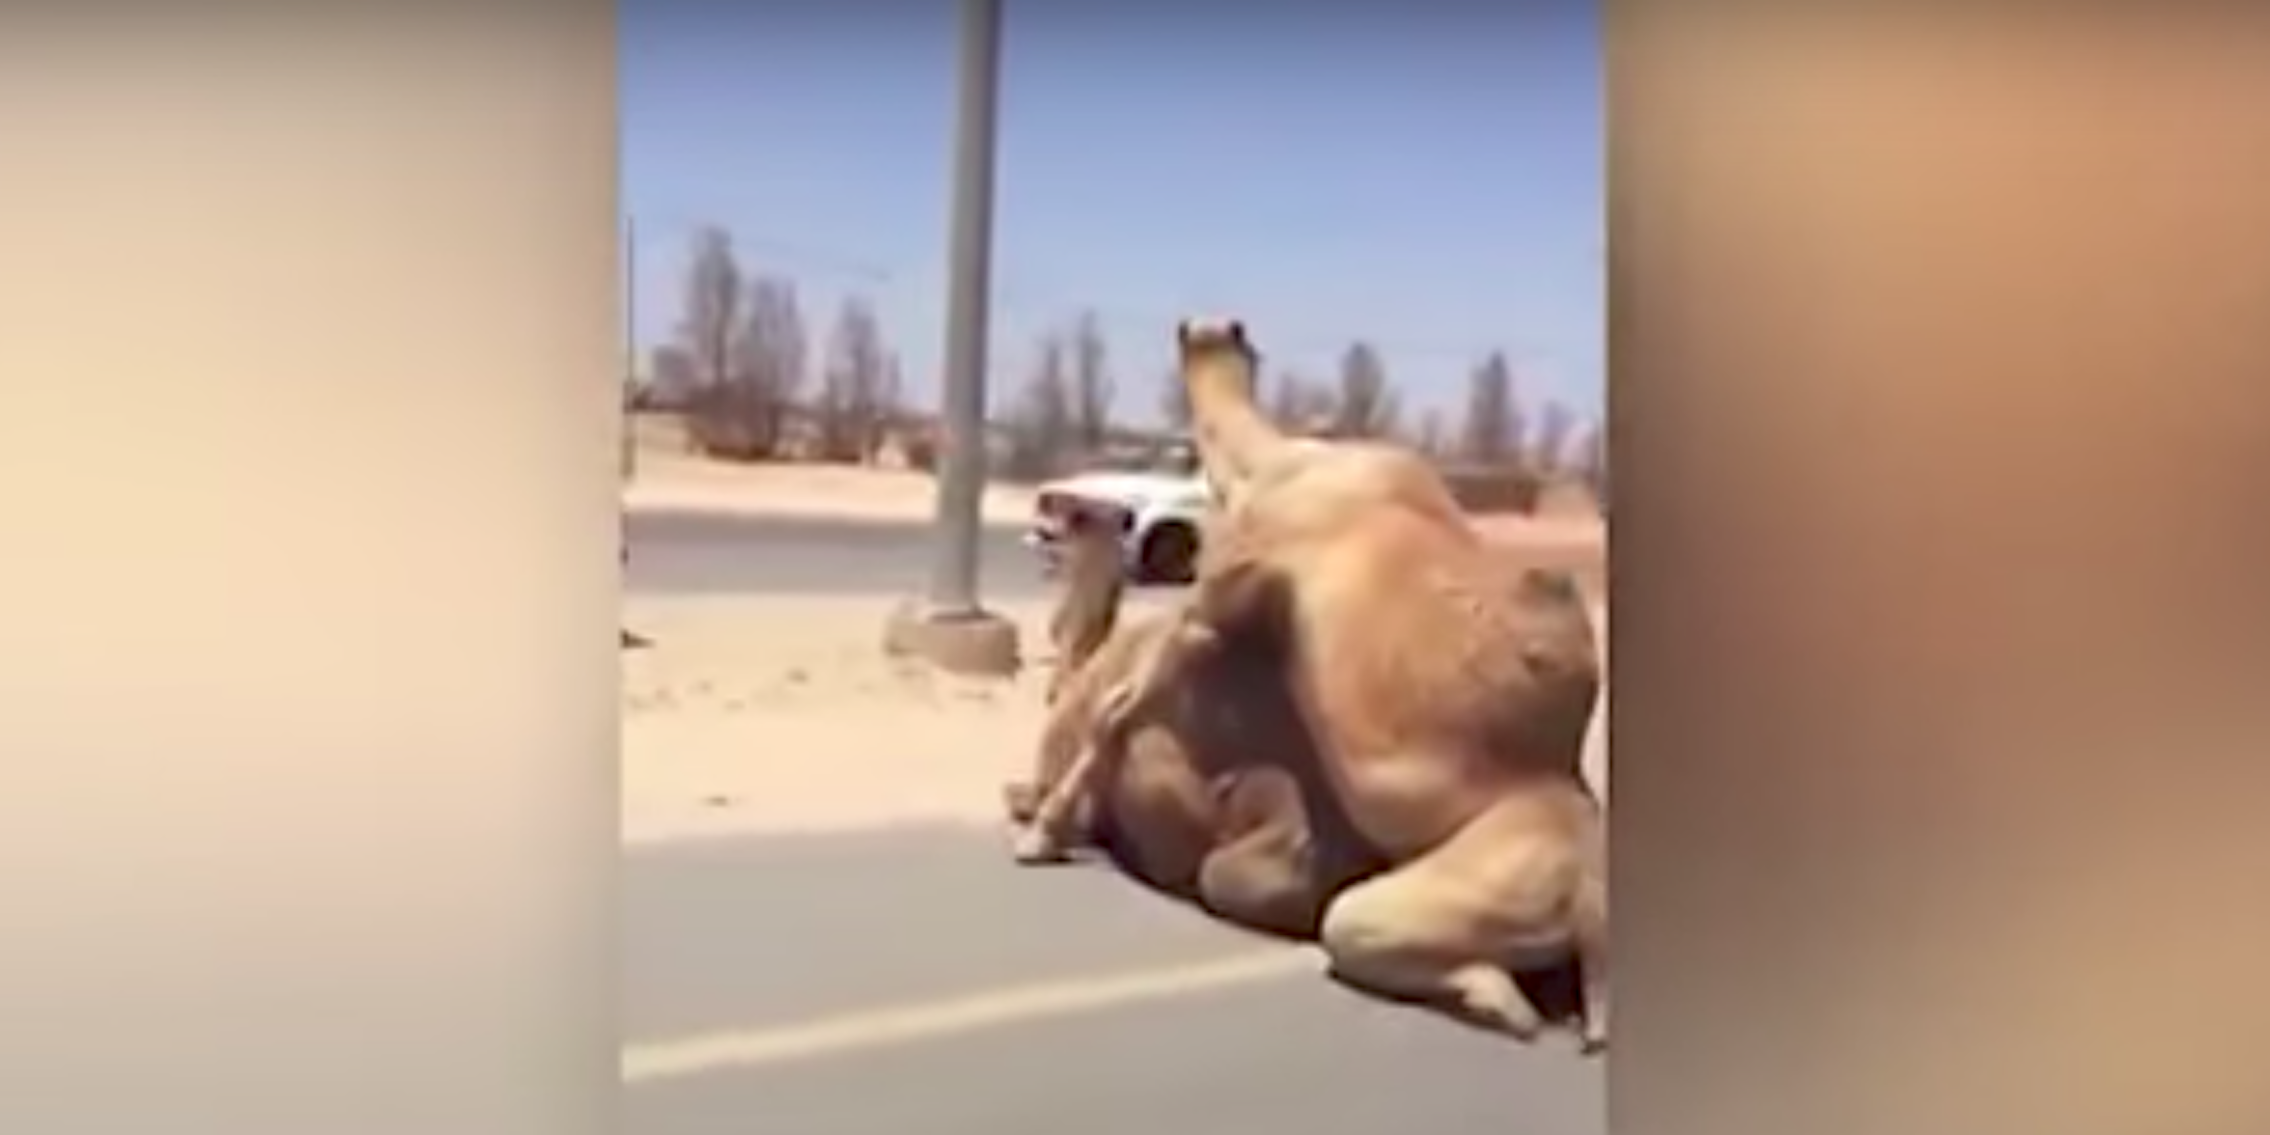 camel sex causes traffic jam in dubai